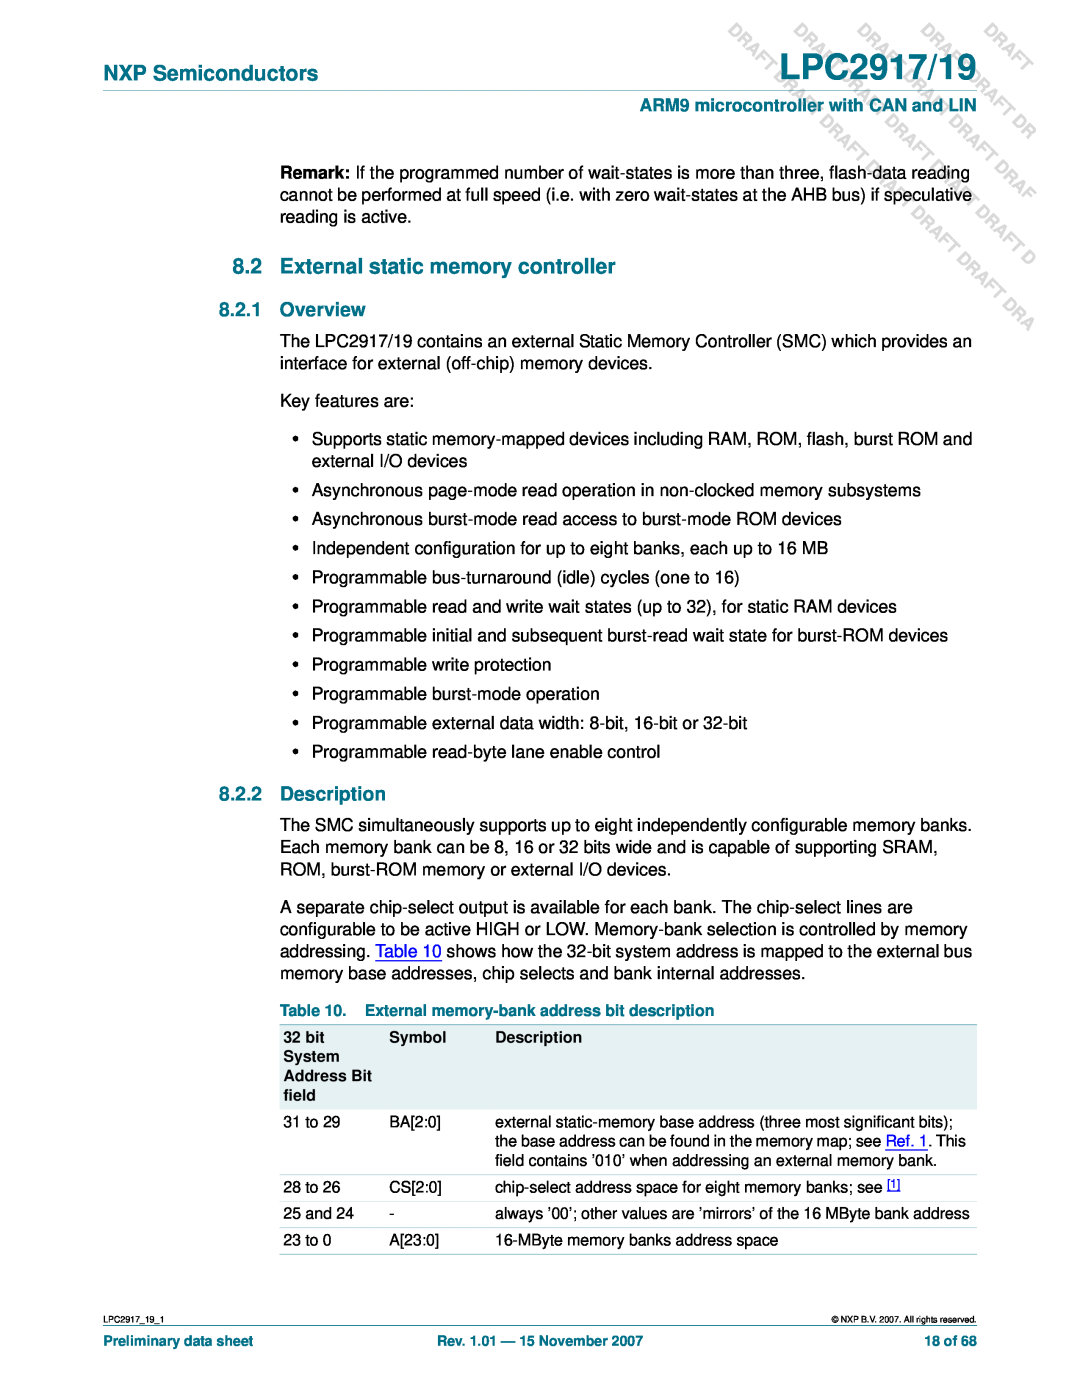 NXP Semiconductors LPC2919 user manual Overview, Description, DLPC2917/19 